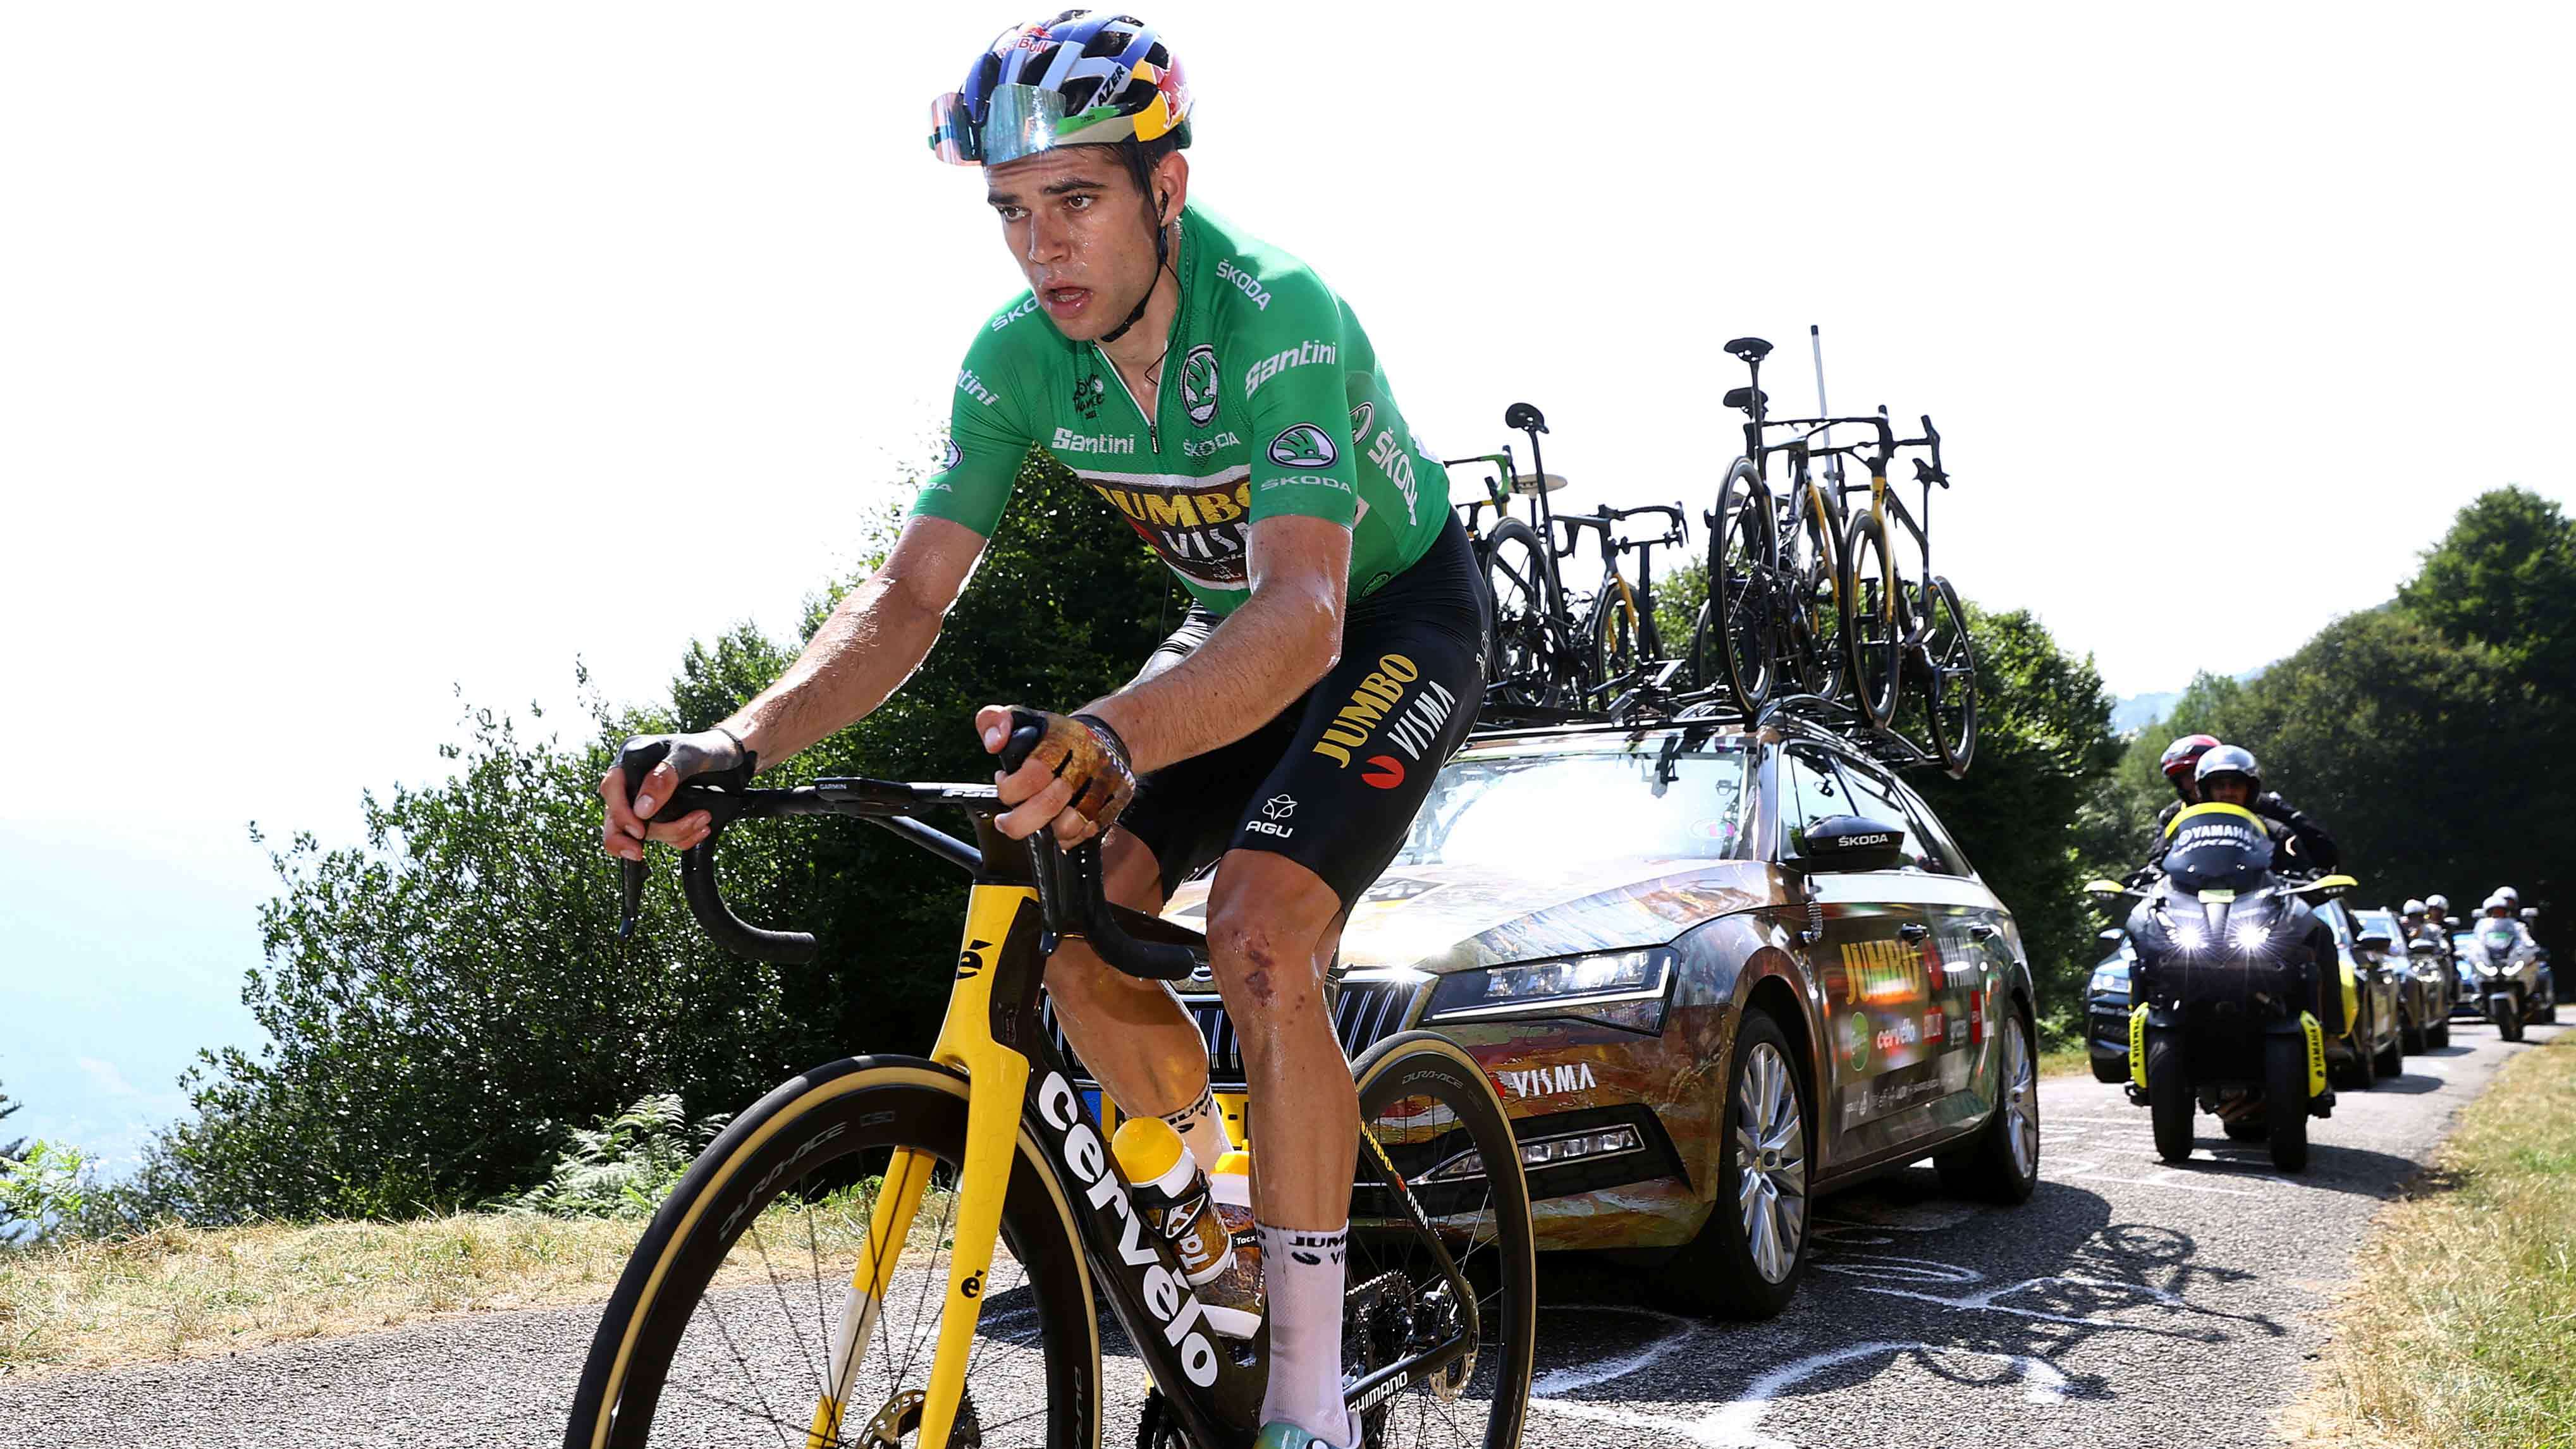 Tour de France 101: What do different color jerseys mean